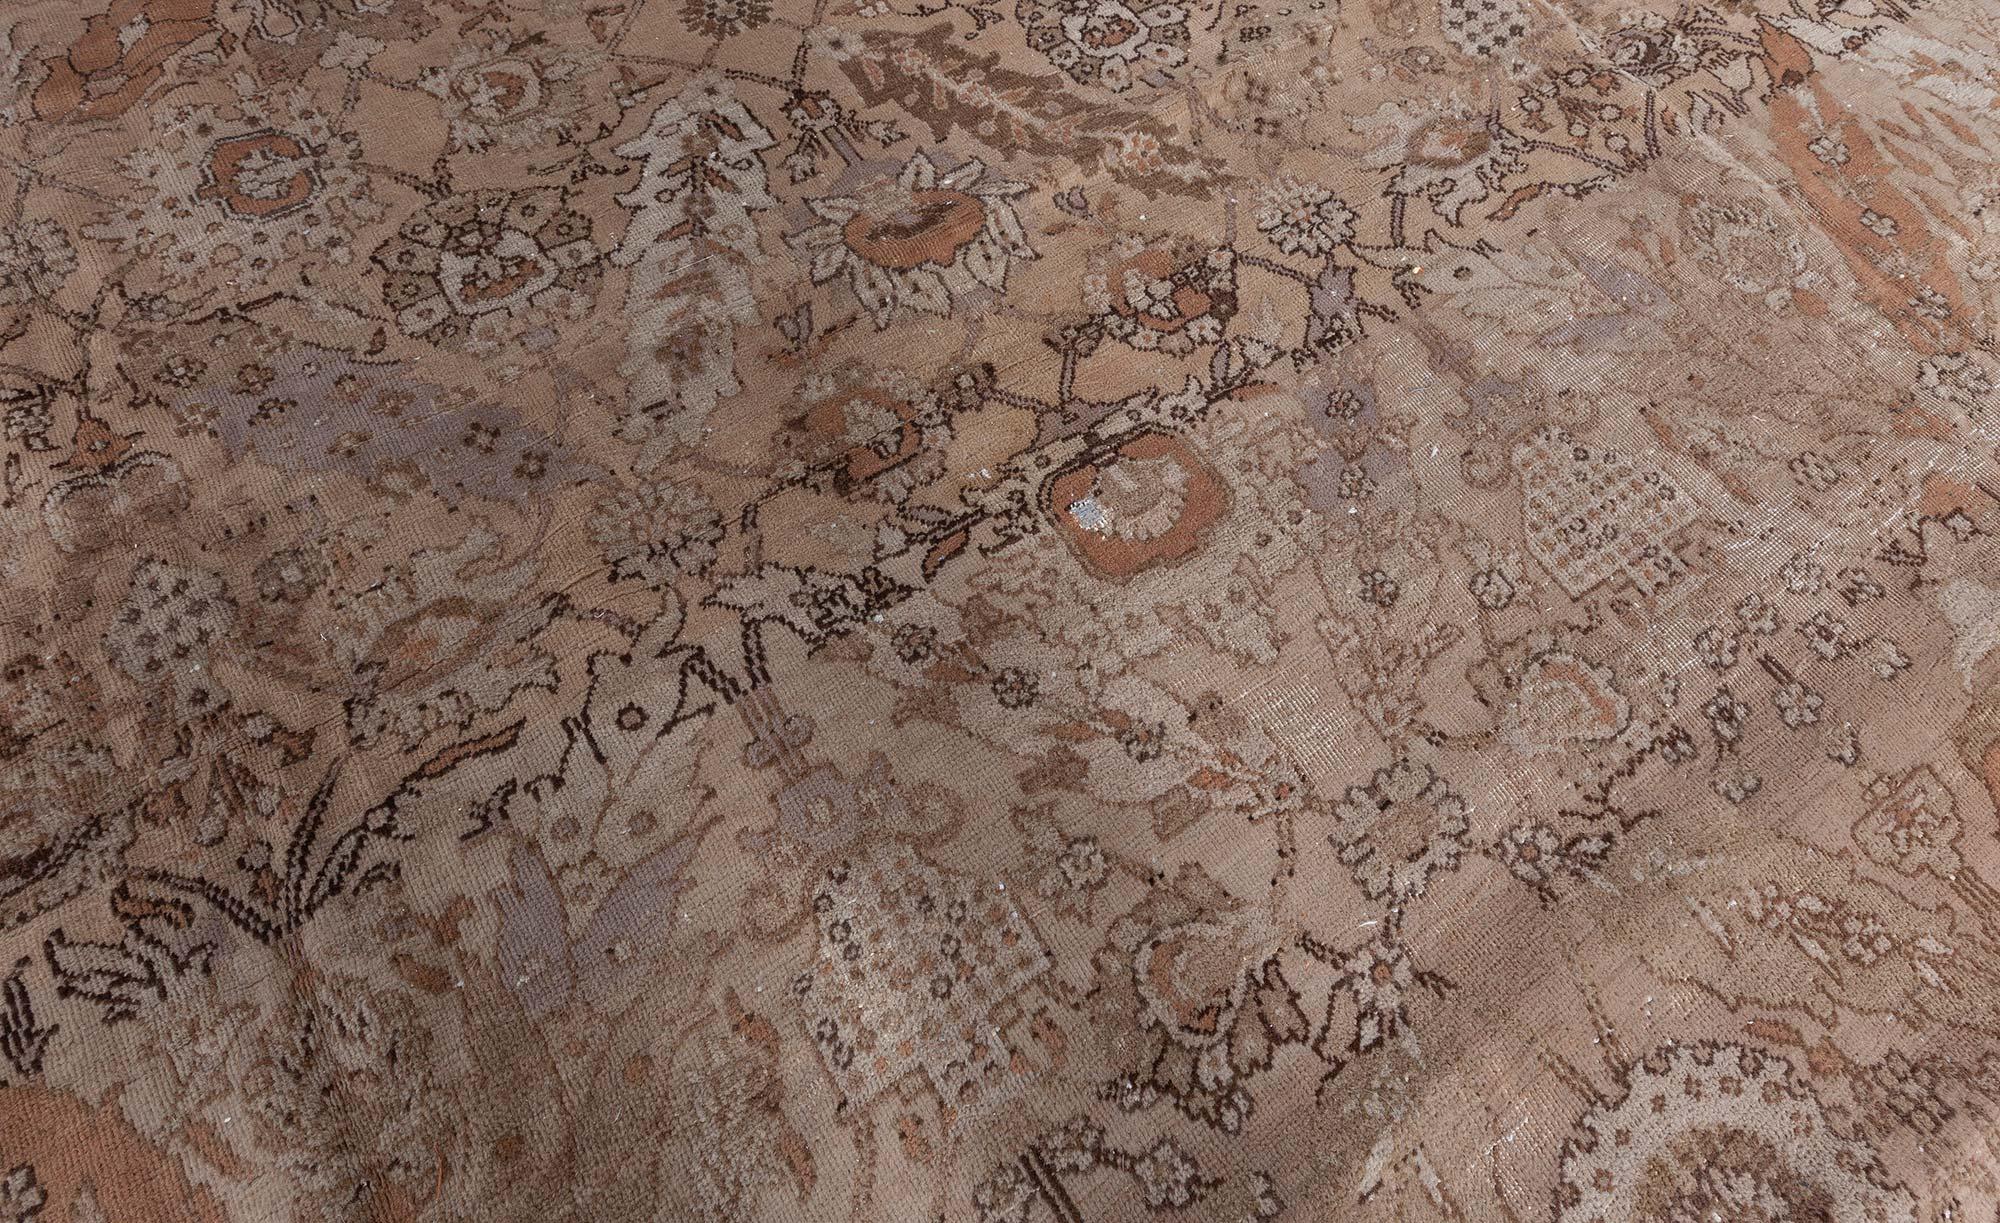 Antique Turkish Hereke Taupe brown beige handmade wool rug.
Size: 10'4